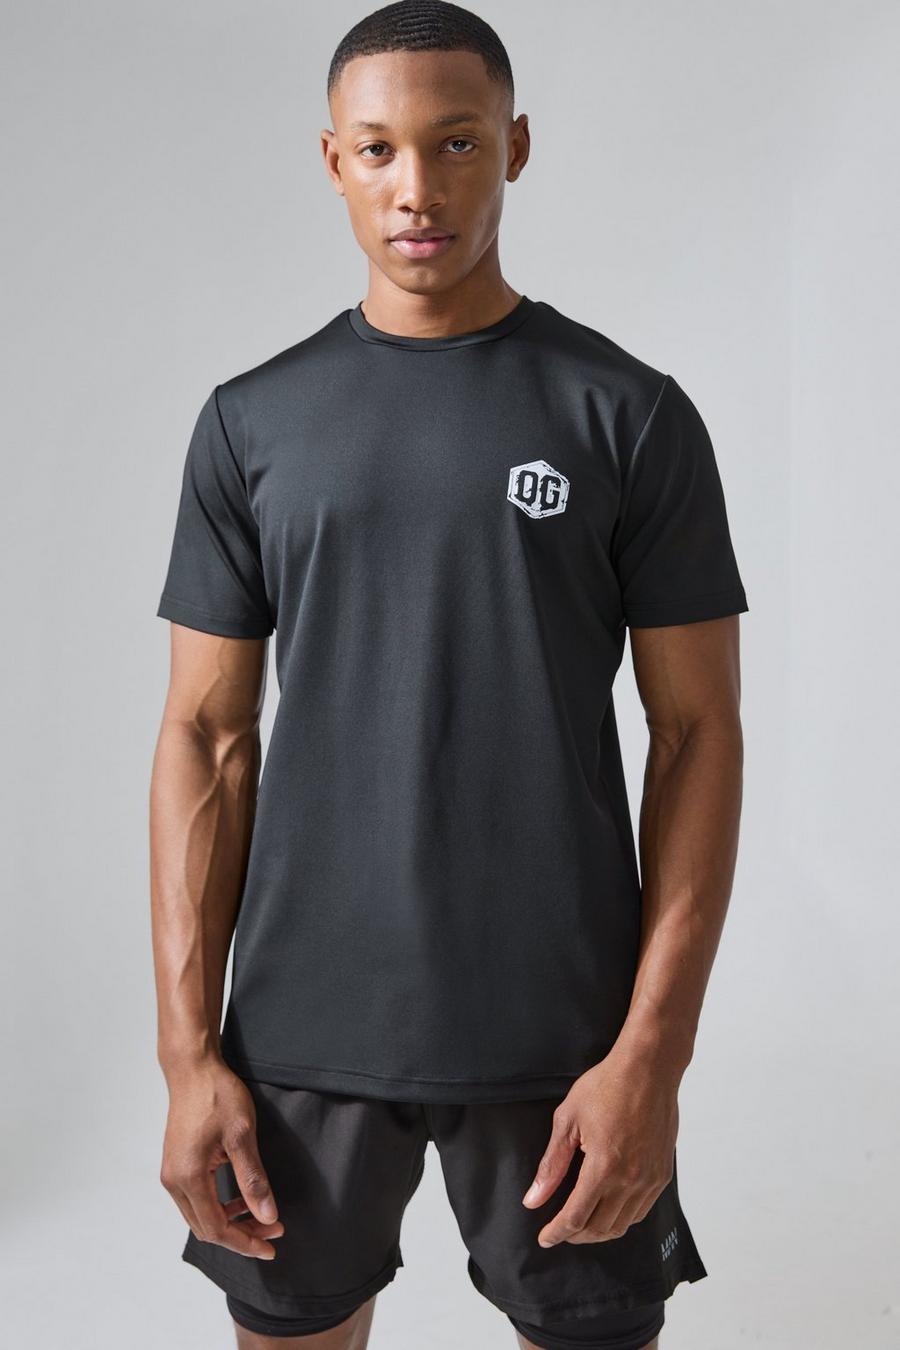 Black Man Active X Og Gym Slim Fit Performance T-shirt